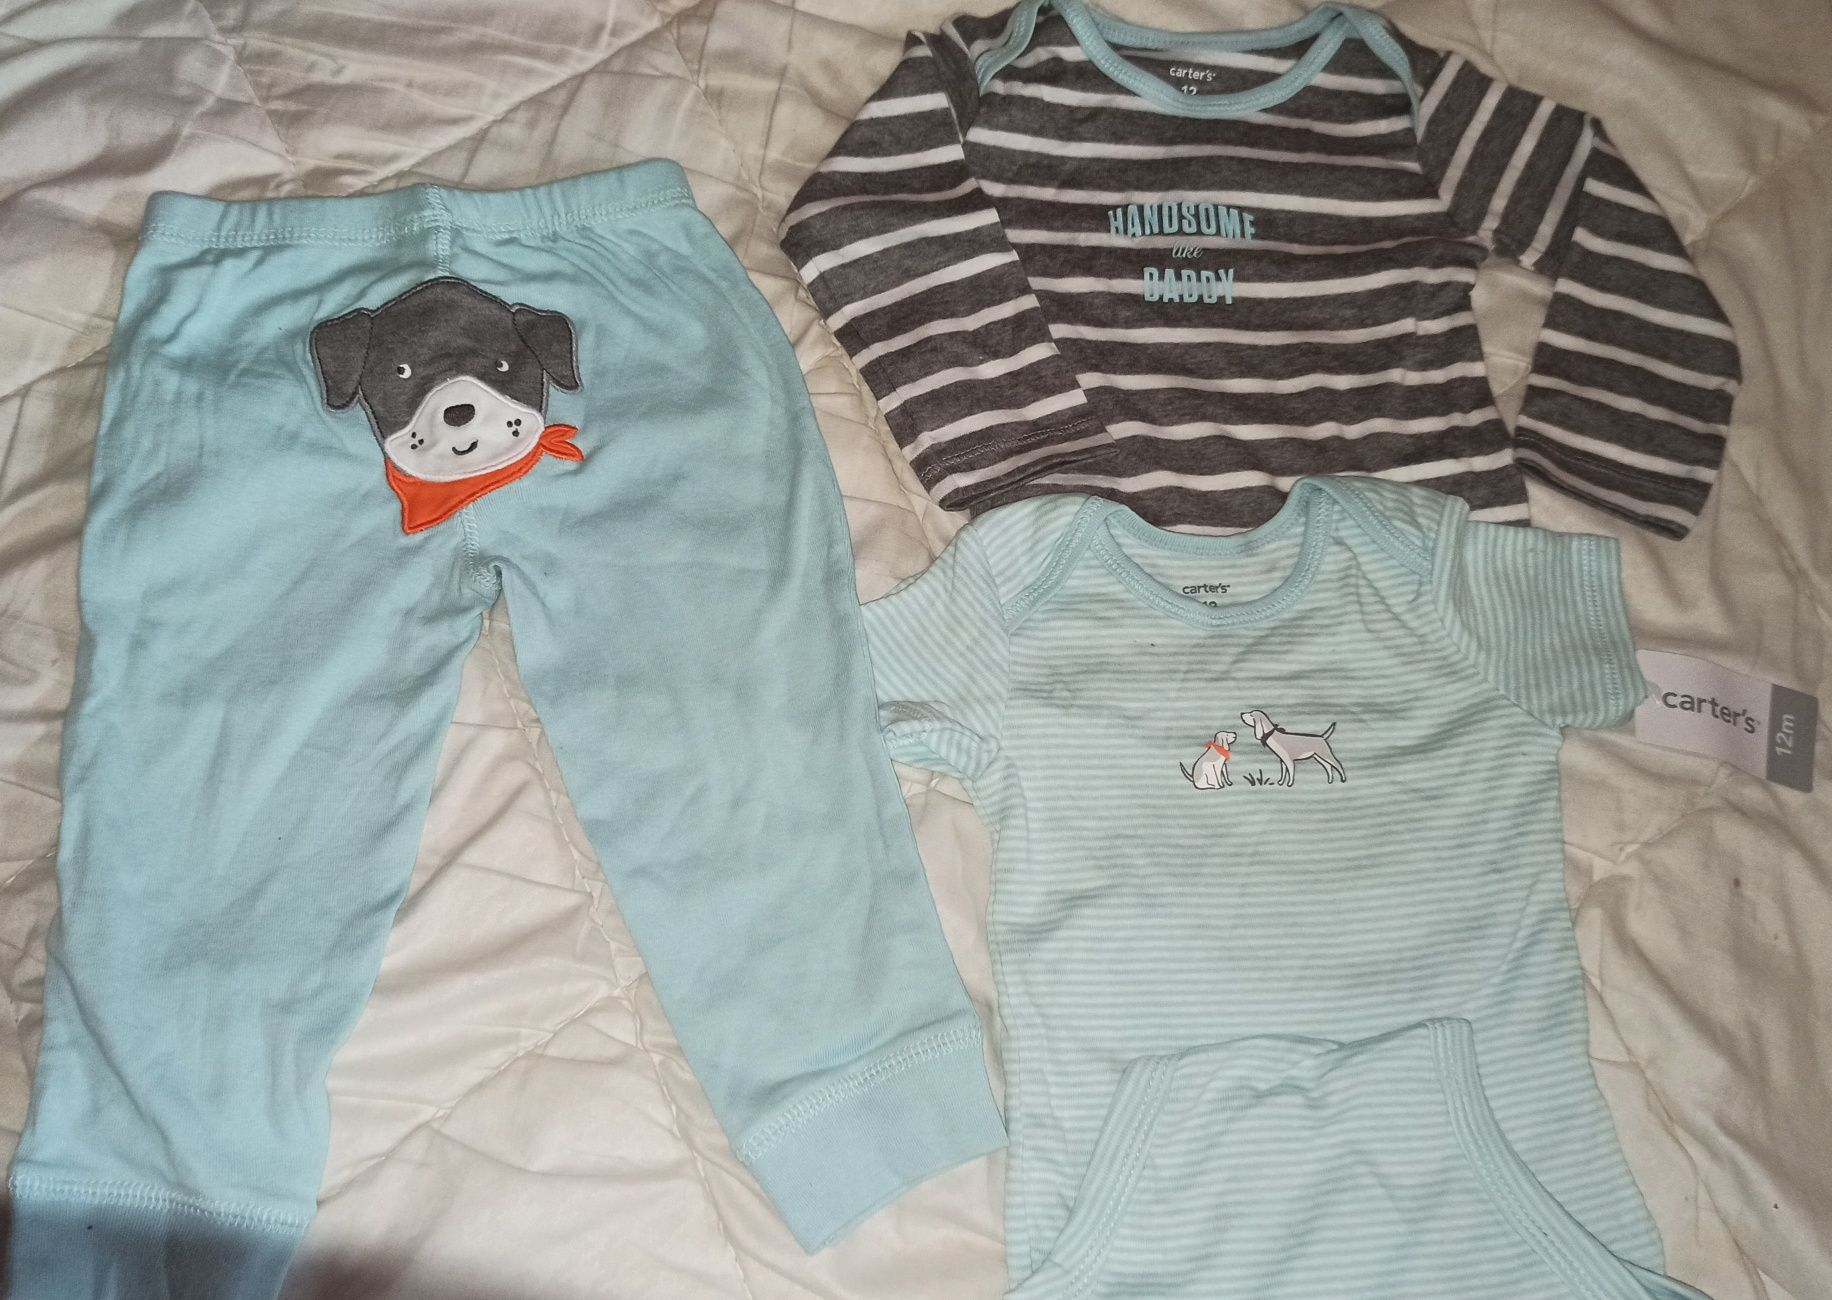 Качественный Детский комплект одежды тройка carter's 12 месяцев.Новый